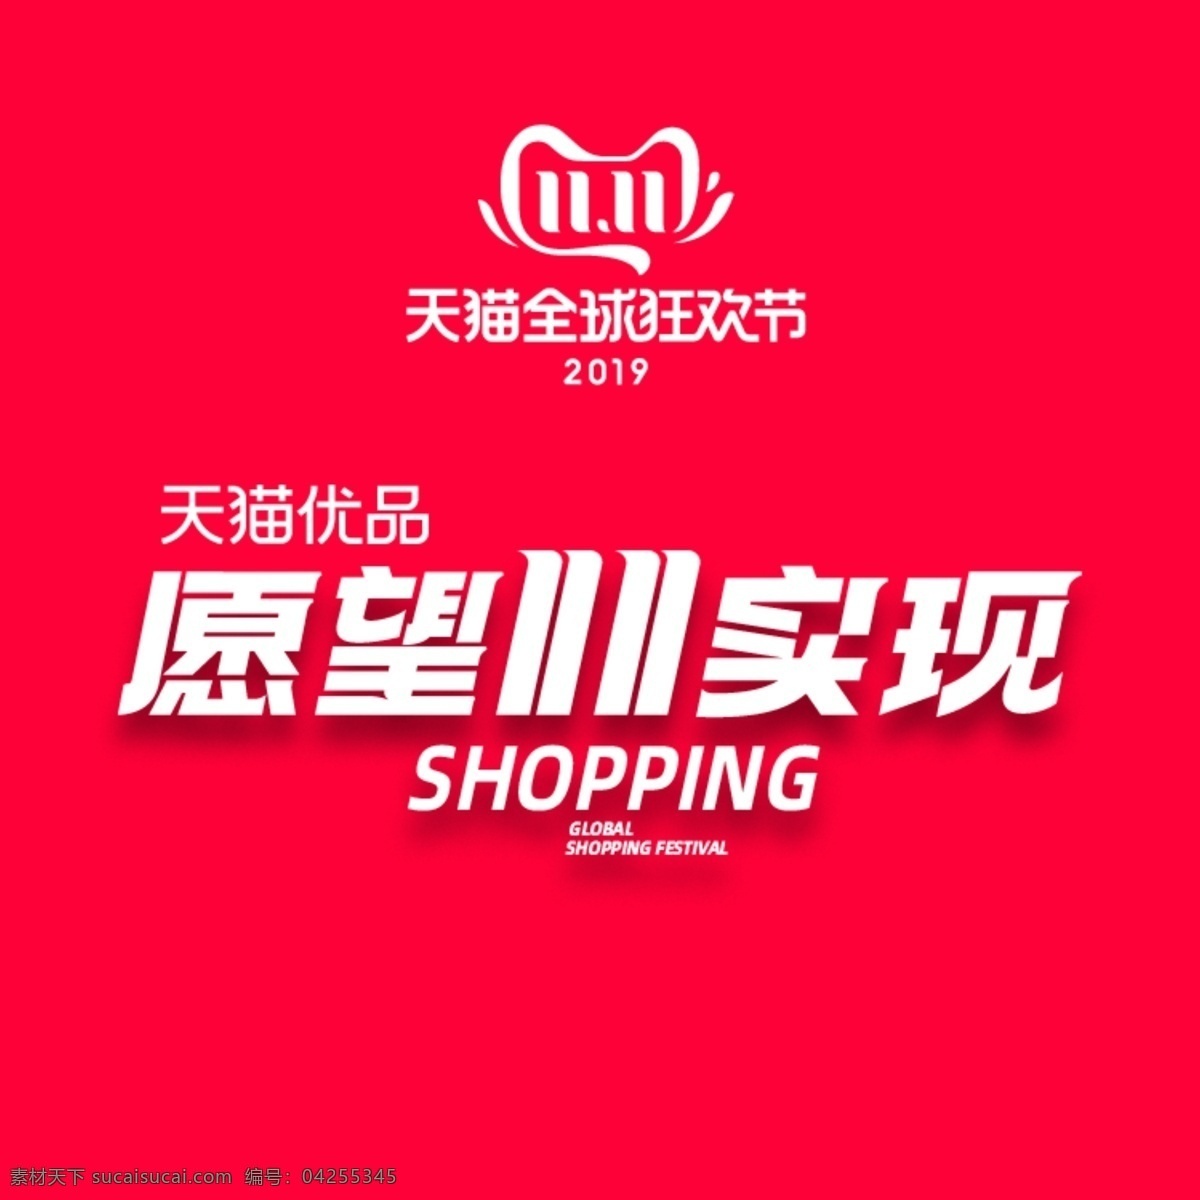 天猫 双十 购物 节 促销 微 信 头像 双十一 购物节 红色